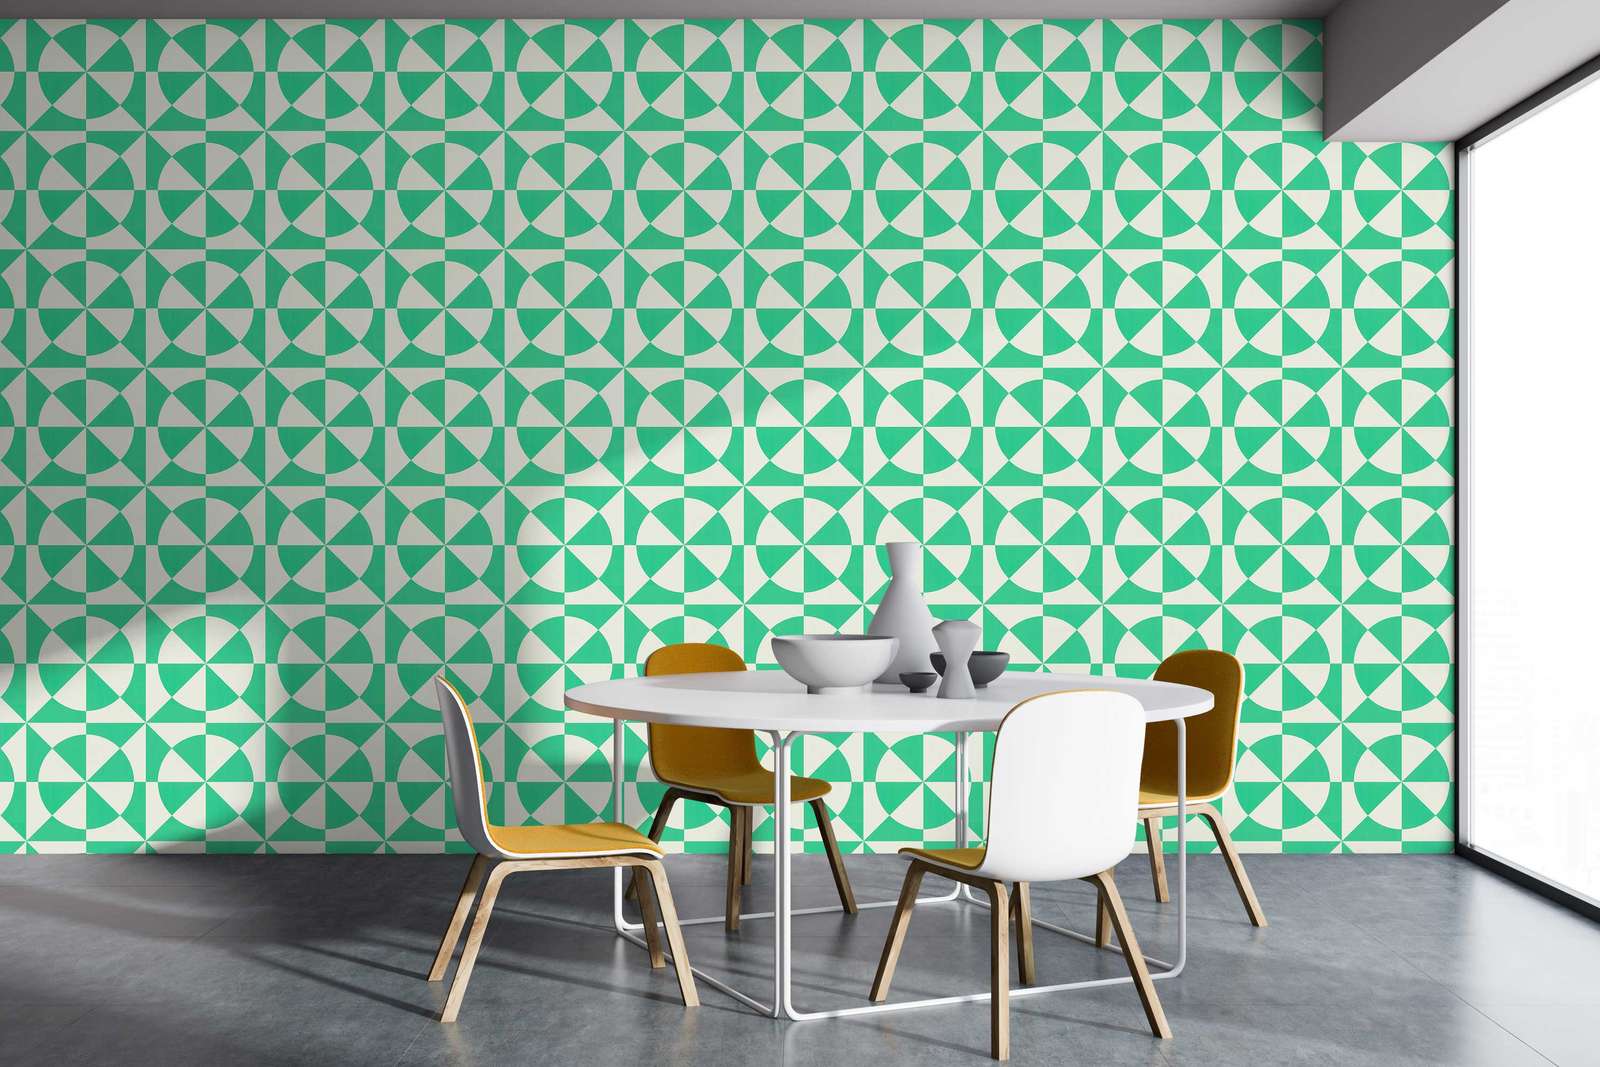             Papel pintado no tejido con formas geométricas - verde, blanco
        